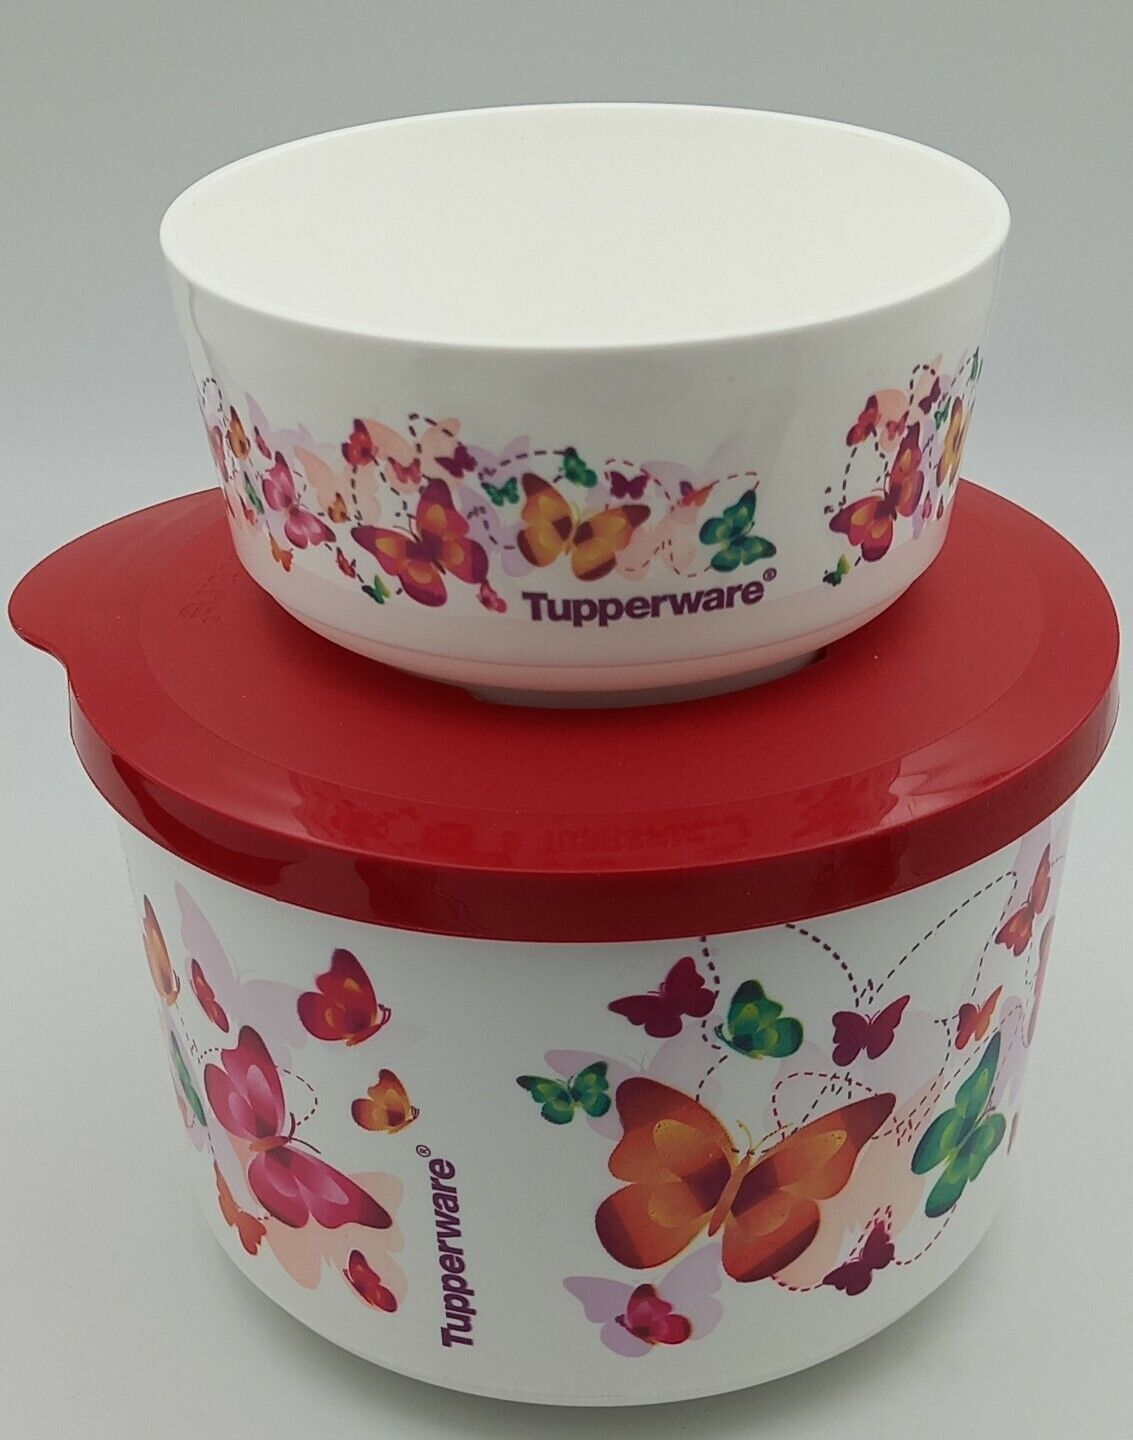 Sidelæns Dominerende Vidunderlig Tupperware Butterfly Bowls W Red Lid Cup Salad Serving Dish New/Demo | eBay